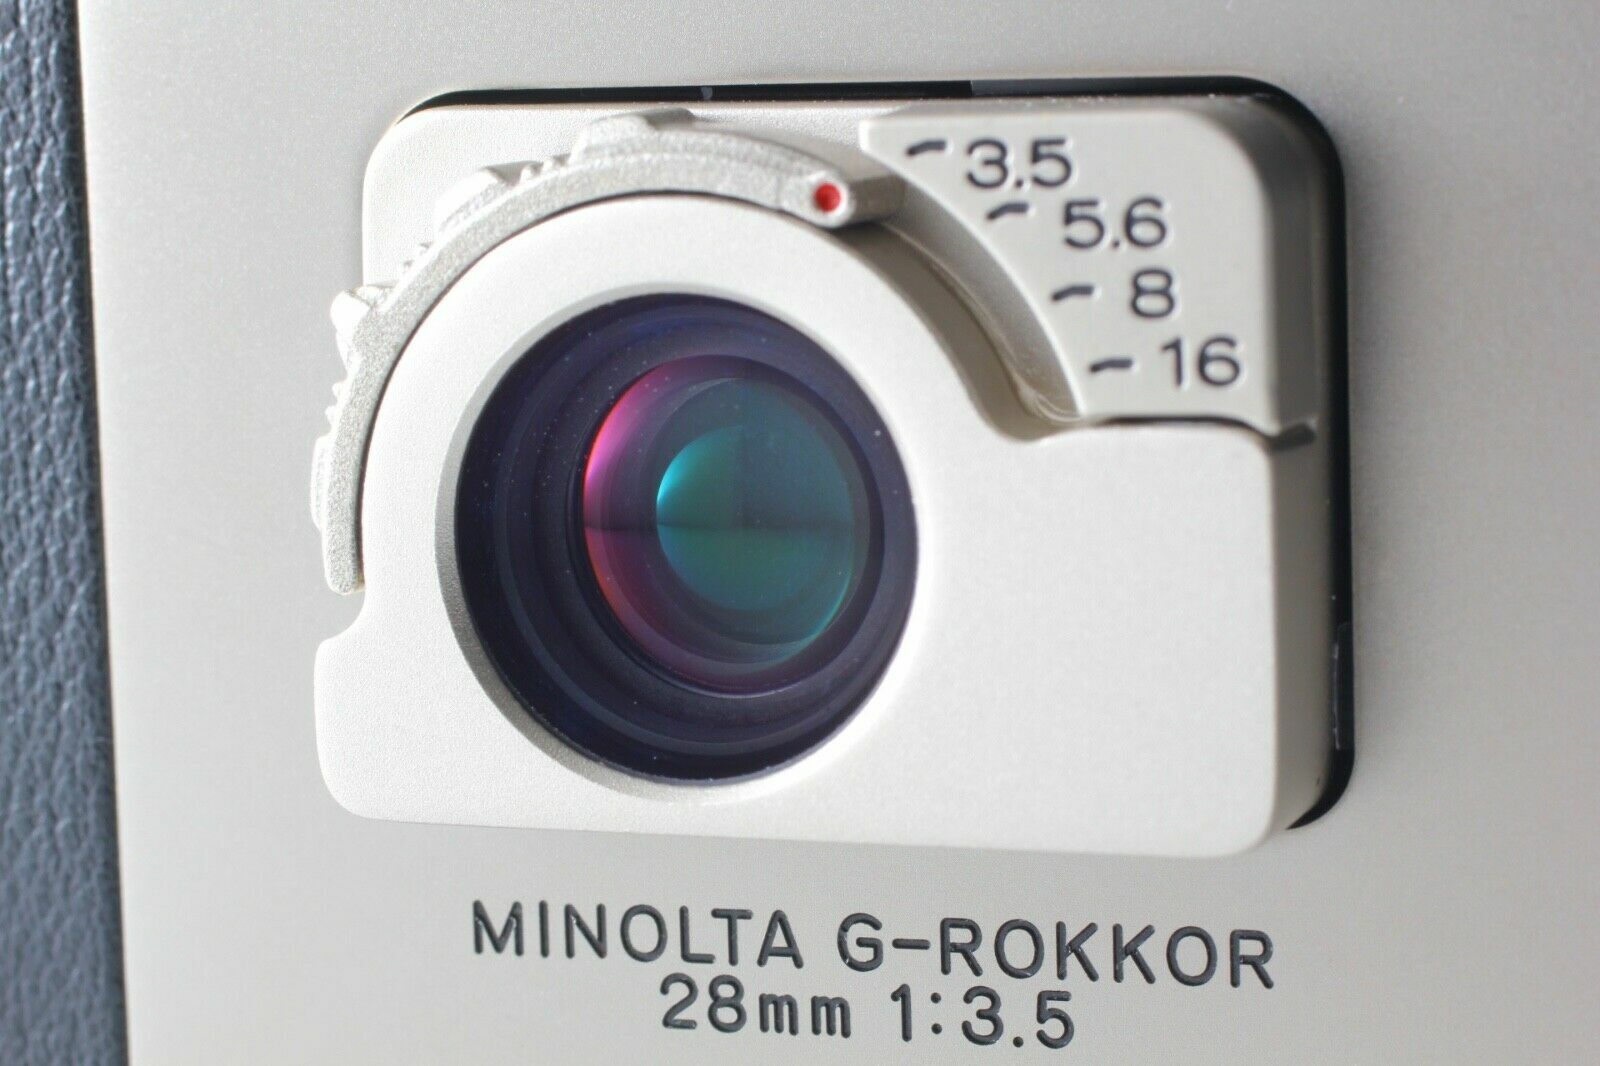 Mint] Minolta TC-1 35mm Point & Shoot Film Camera Body From JAPAN 